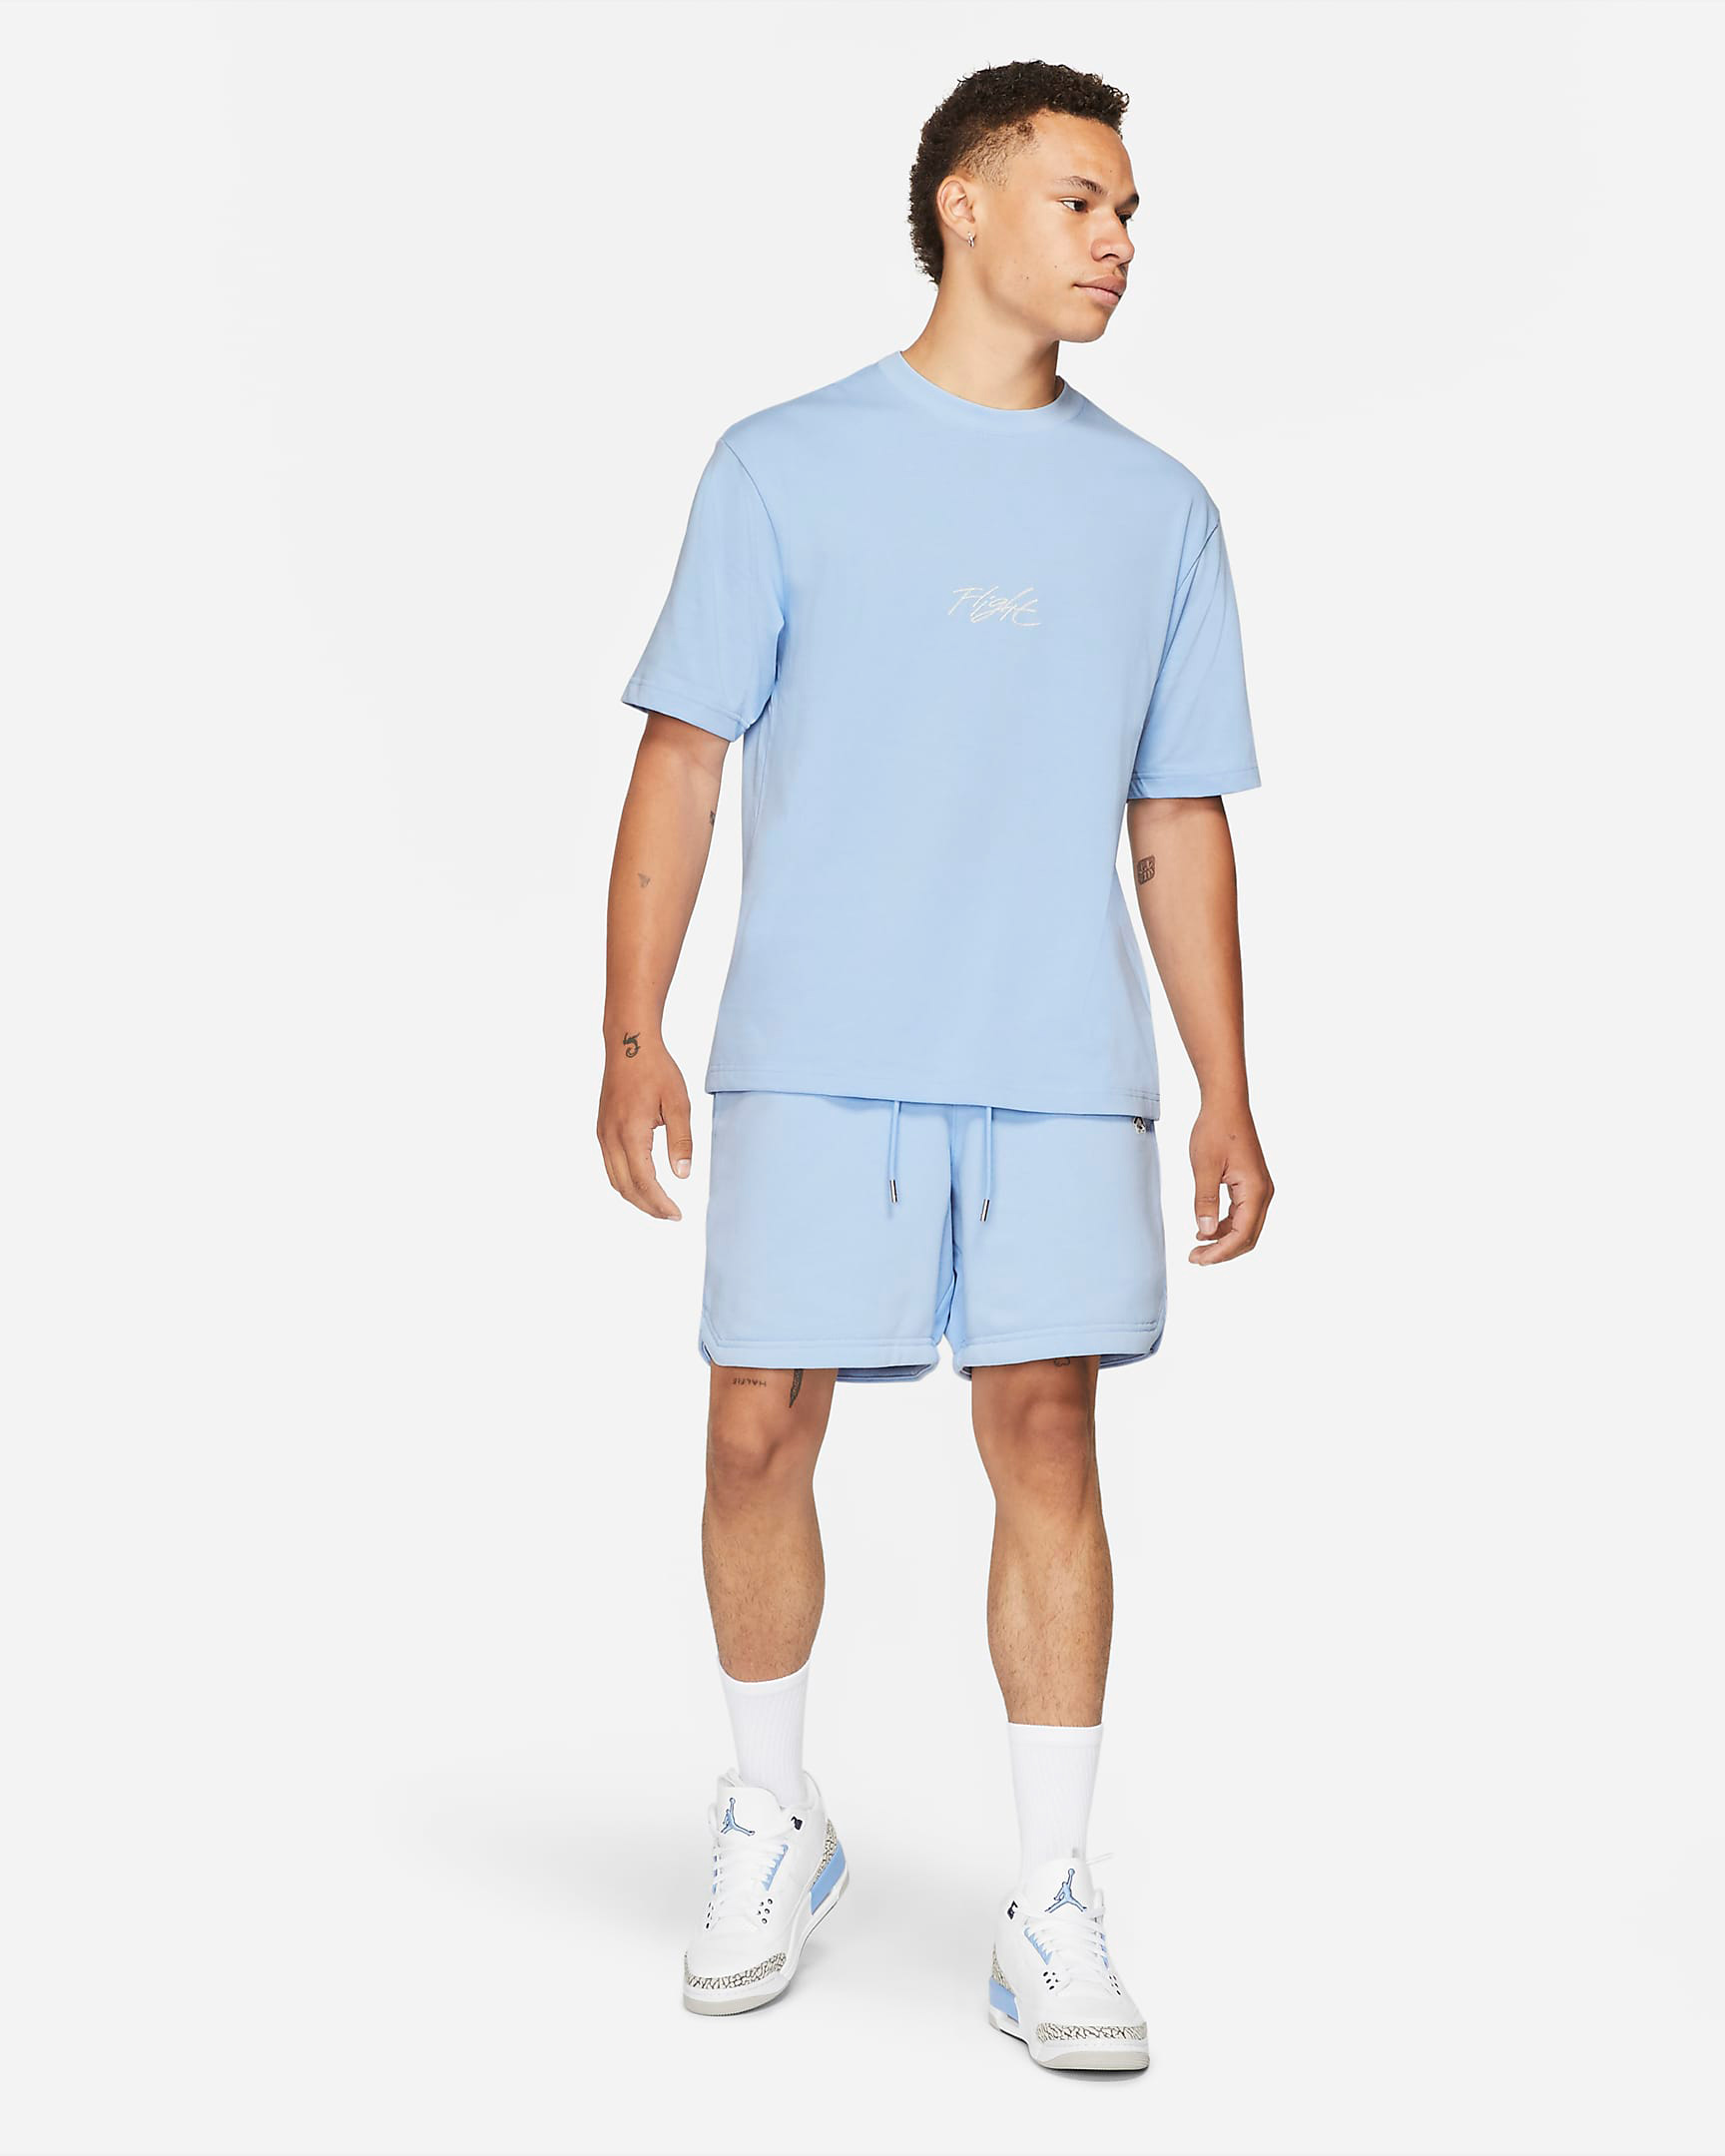 jordan-5-bluebird-shirt-shorts-outfit